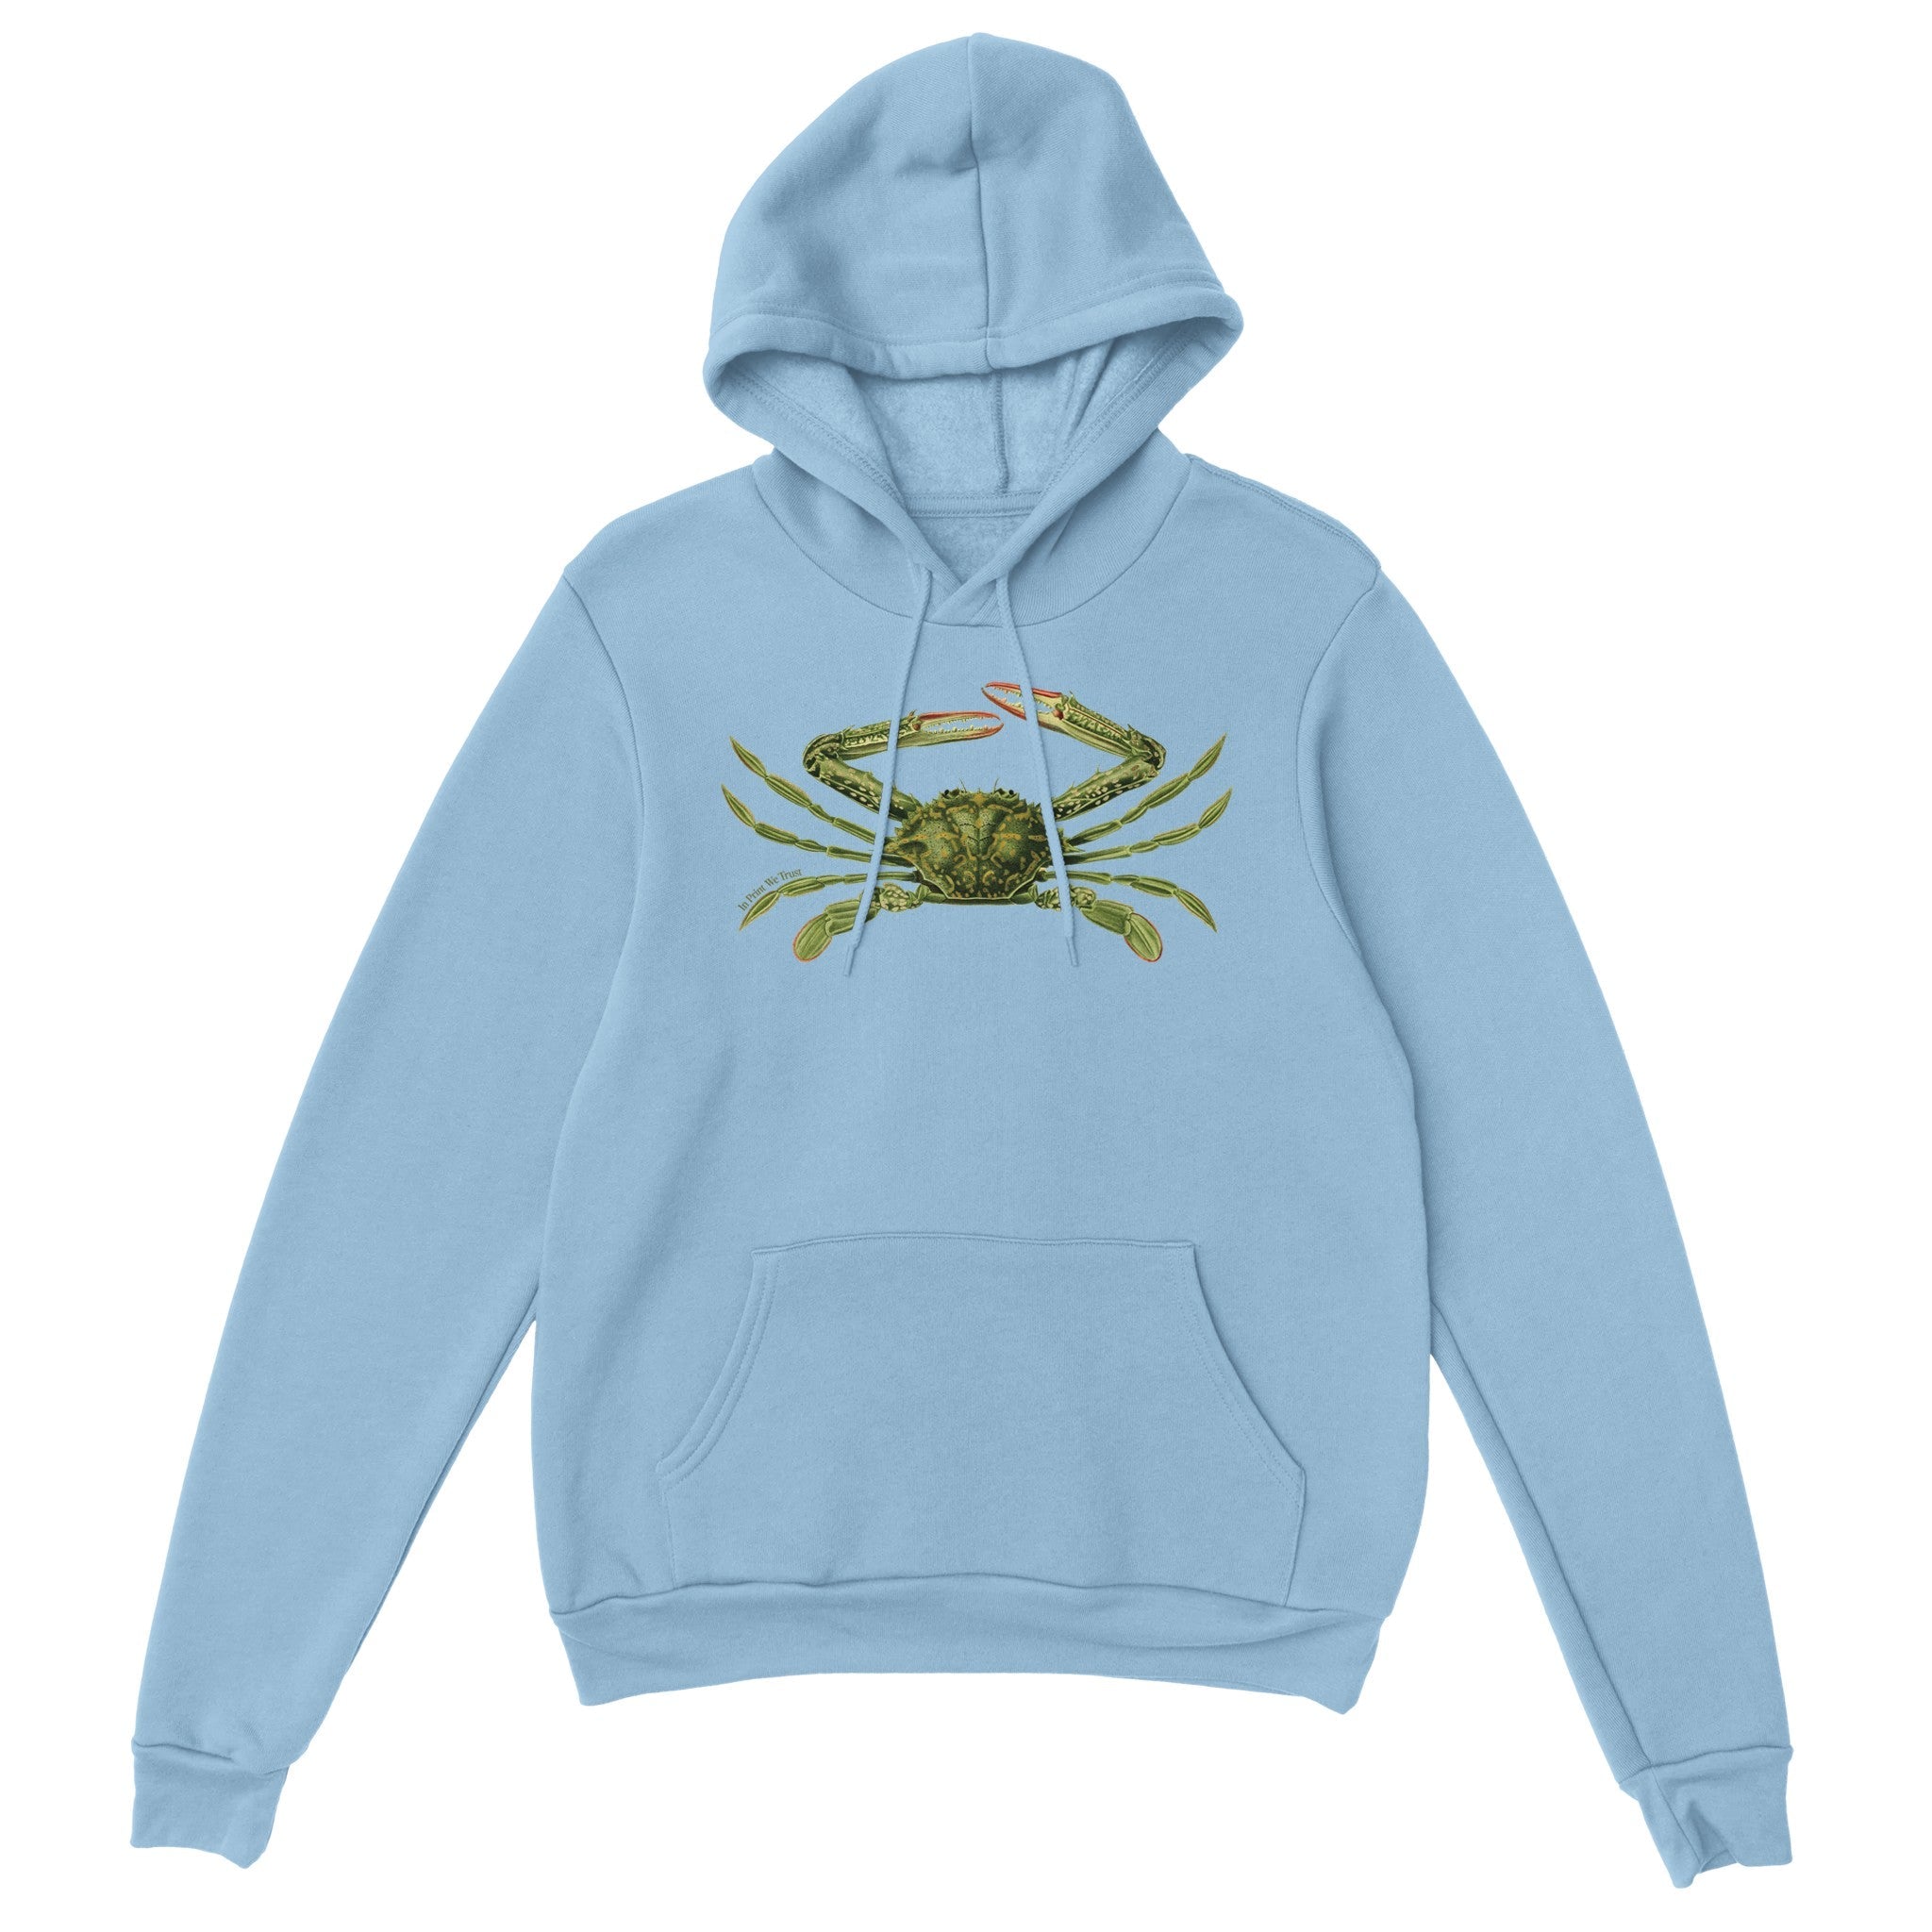 'Crabby' hoodie - In Print We Trust